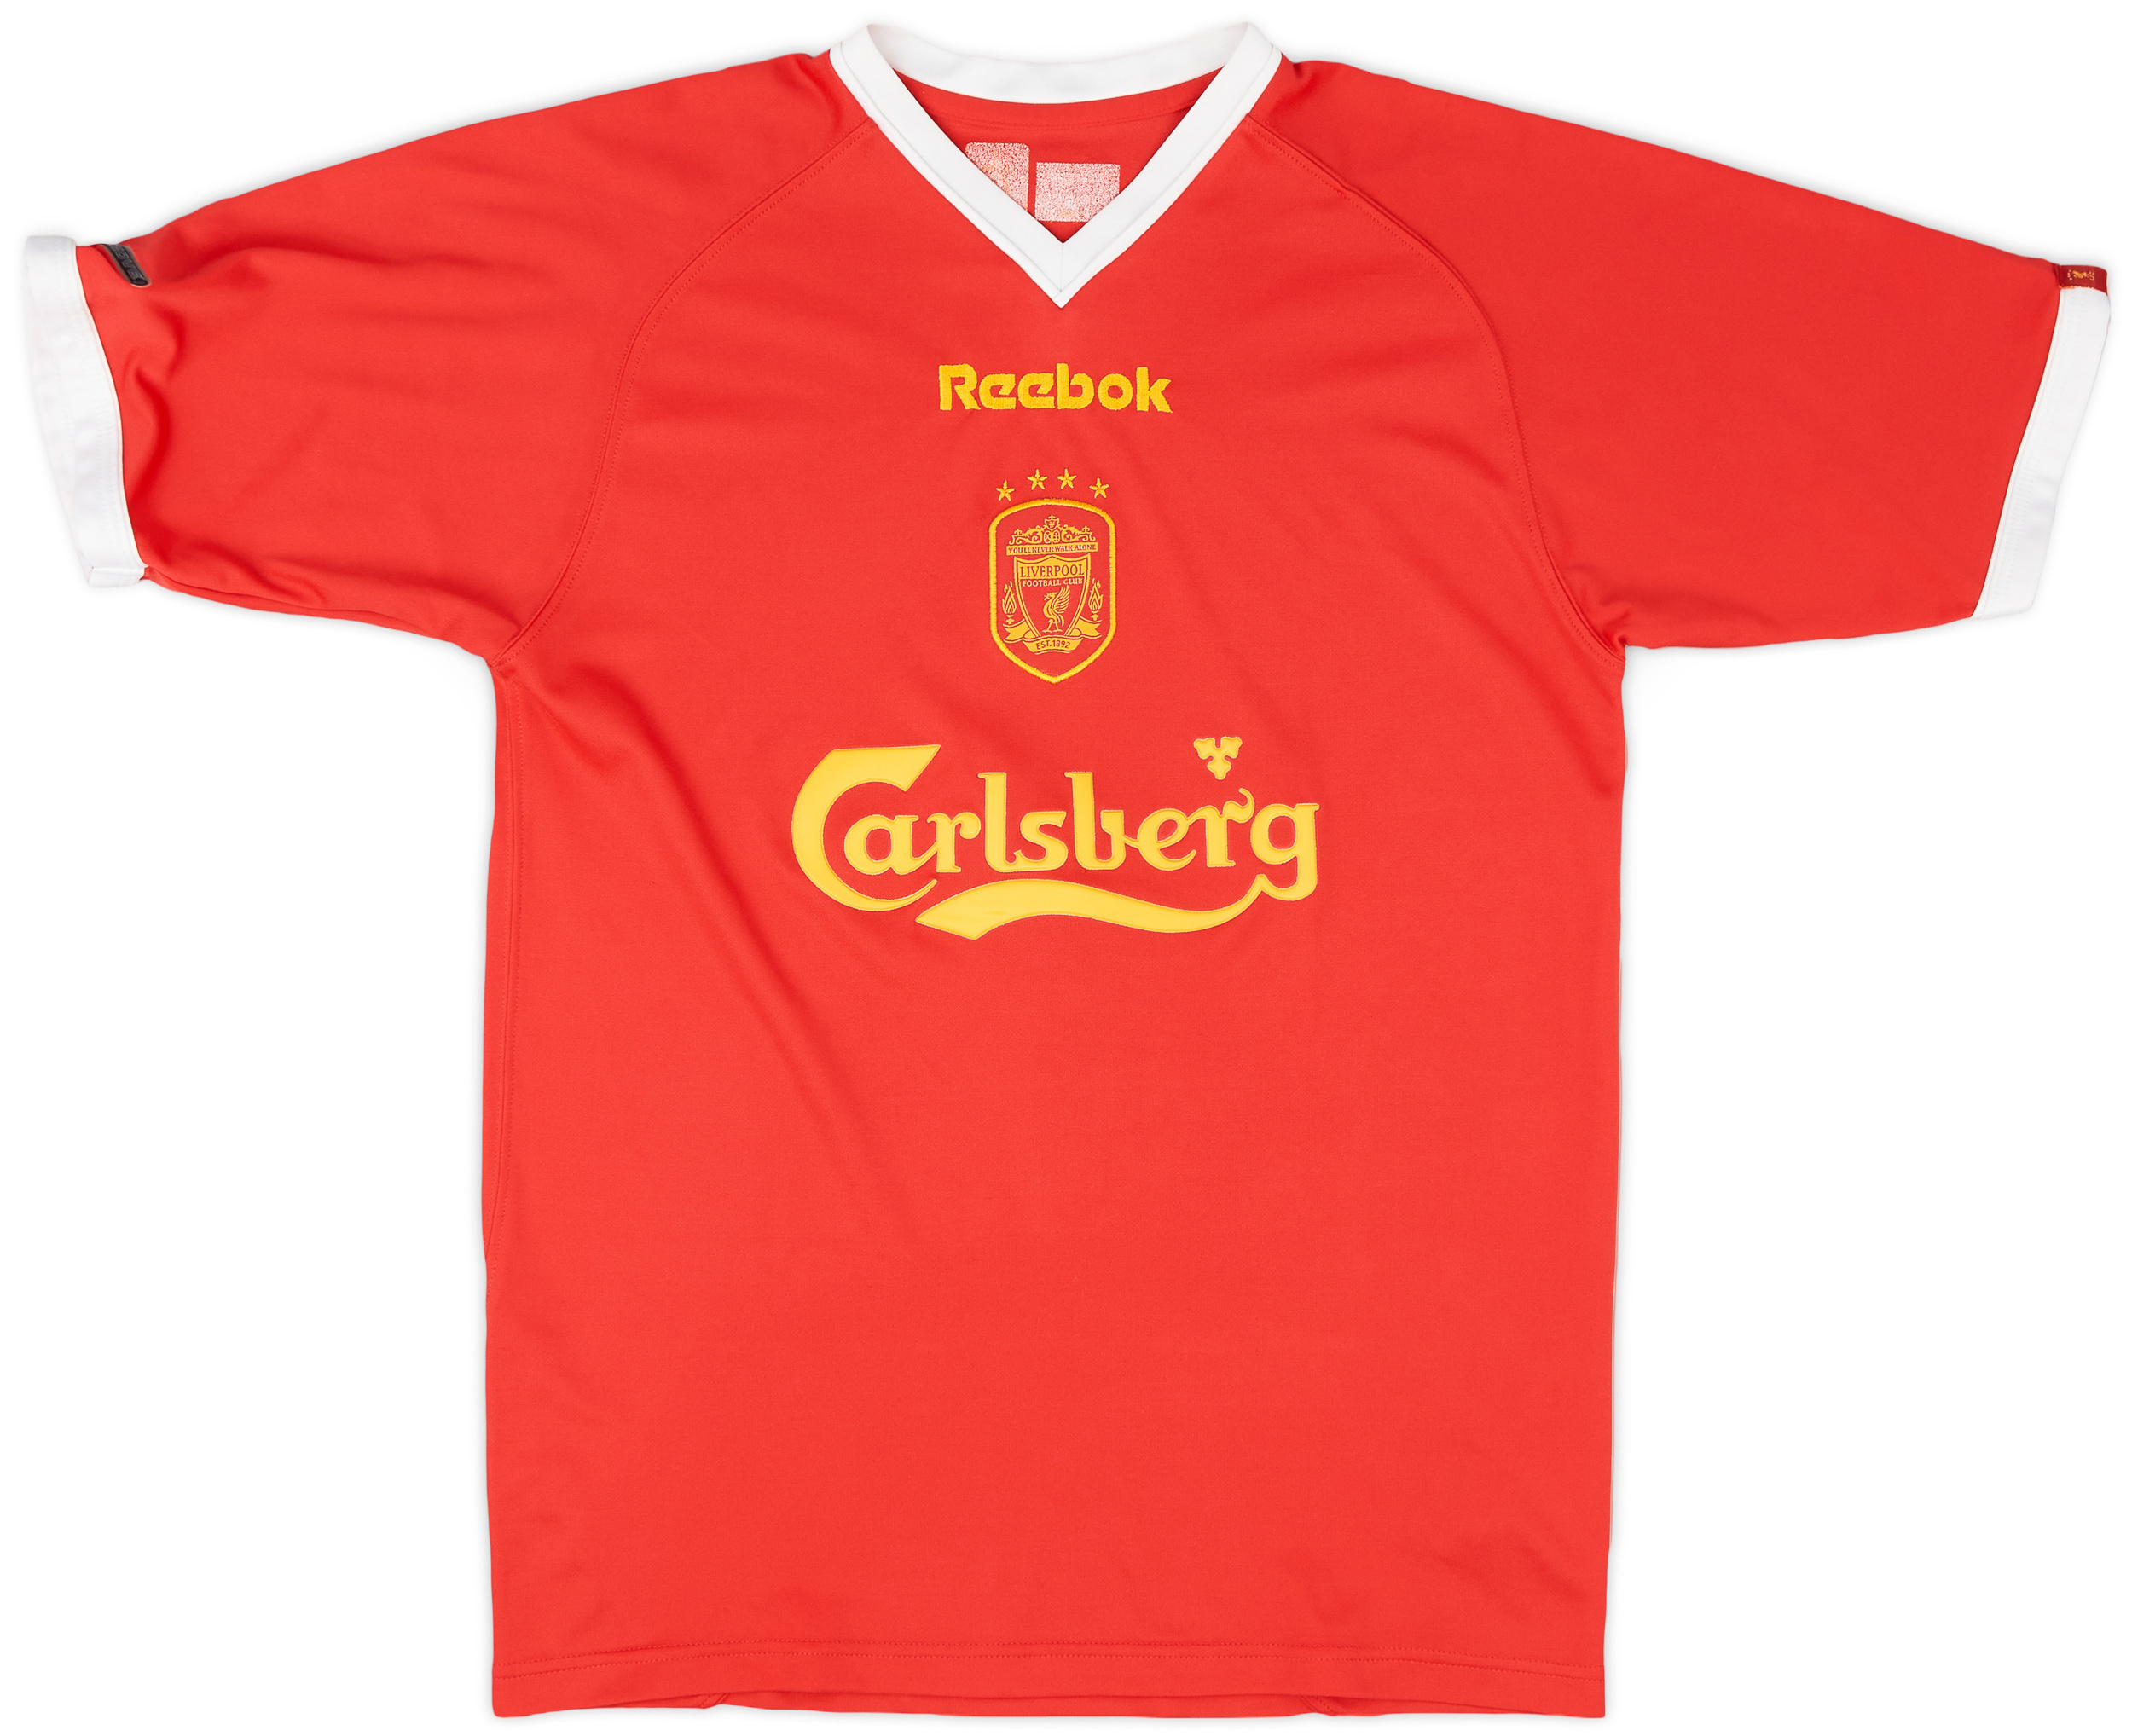 2001-03 Liverpool CL Shirt - 9/10 - ()